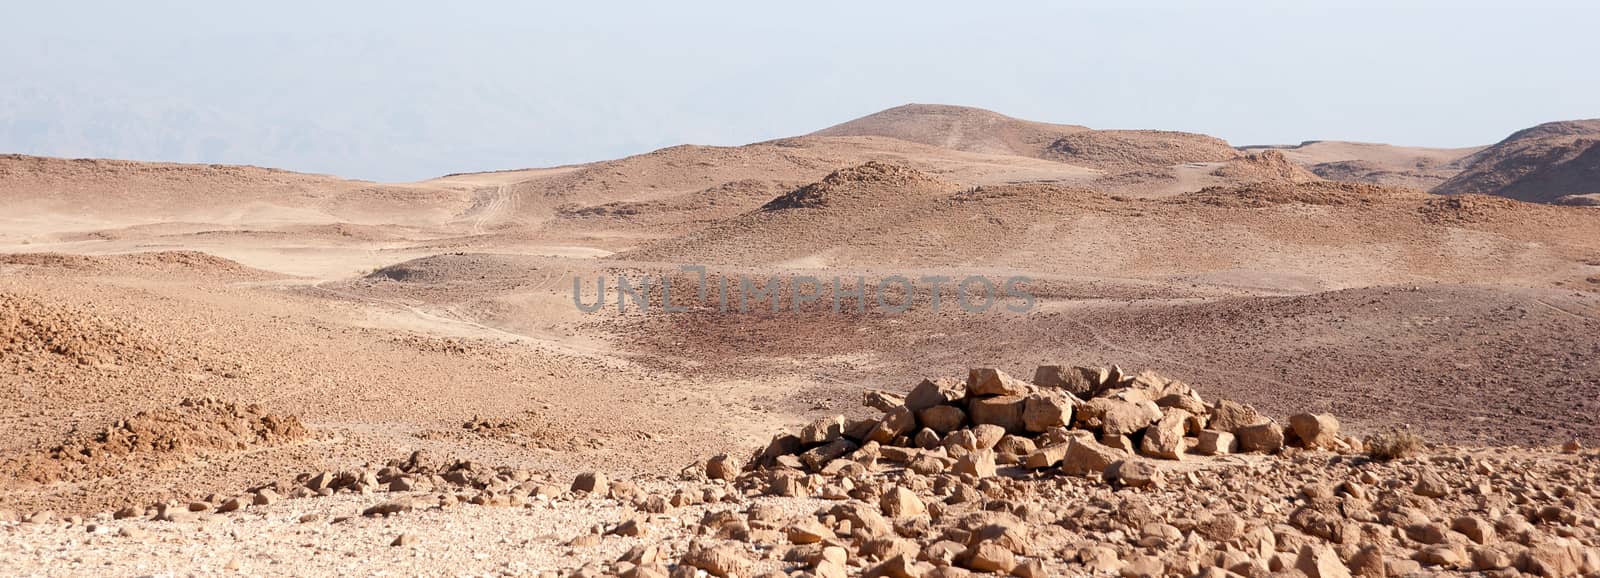 Judean stone desert by javax